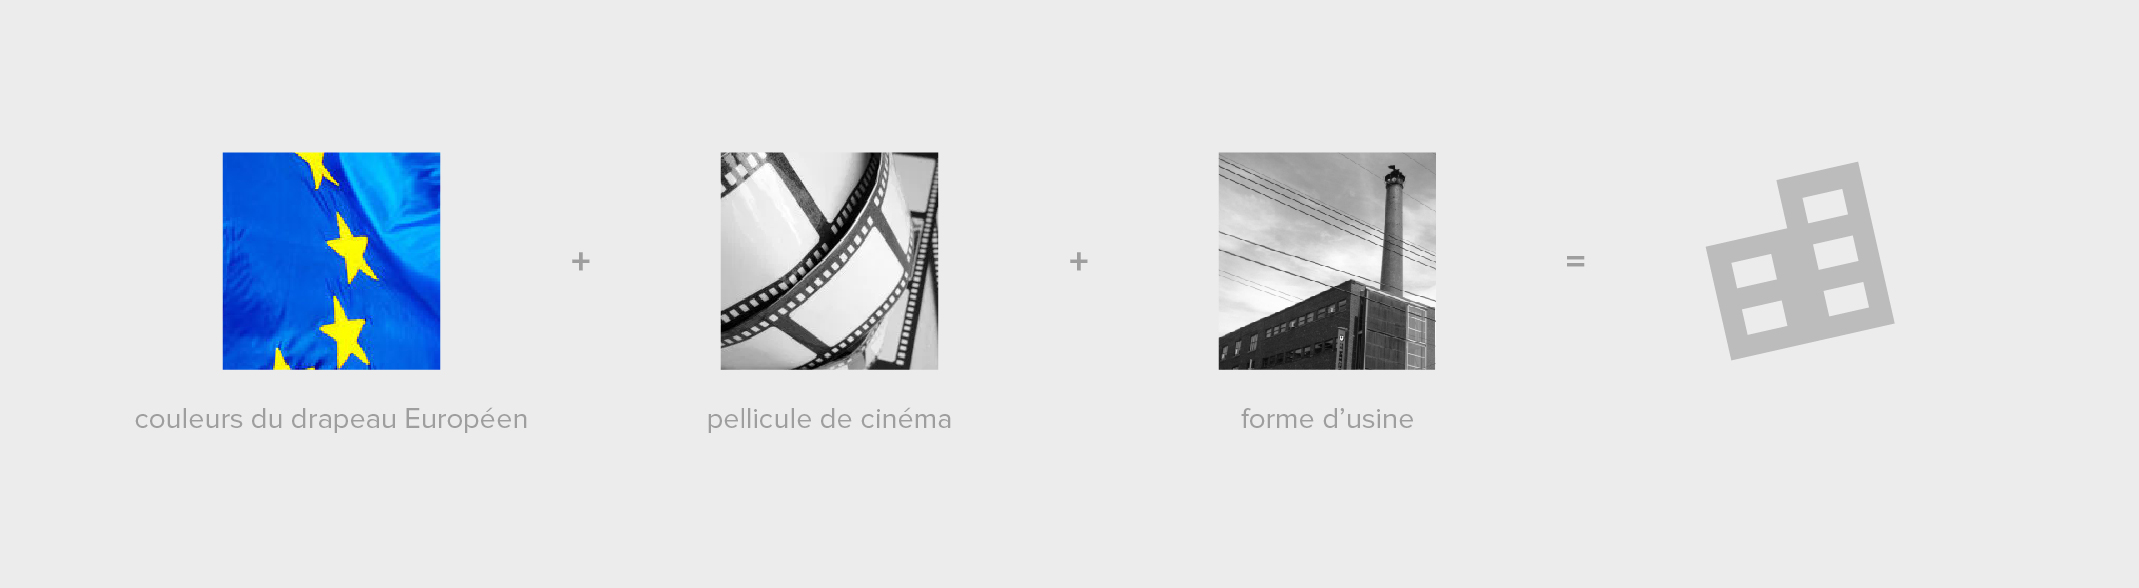 composition du logo pour le projet european film factory à annecy